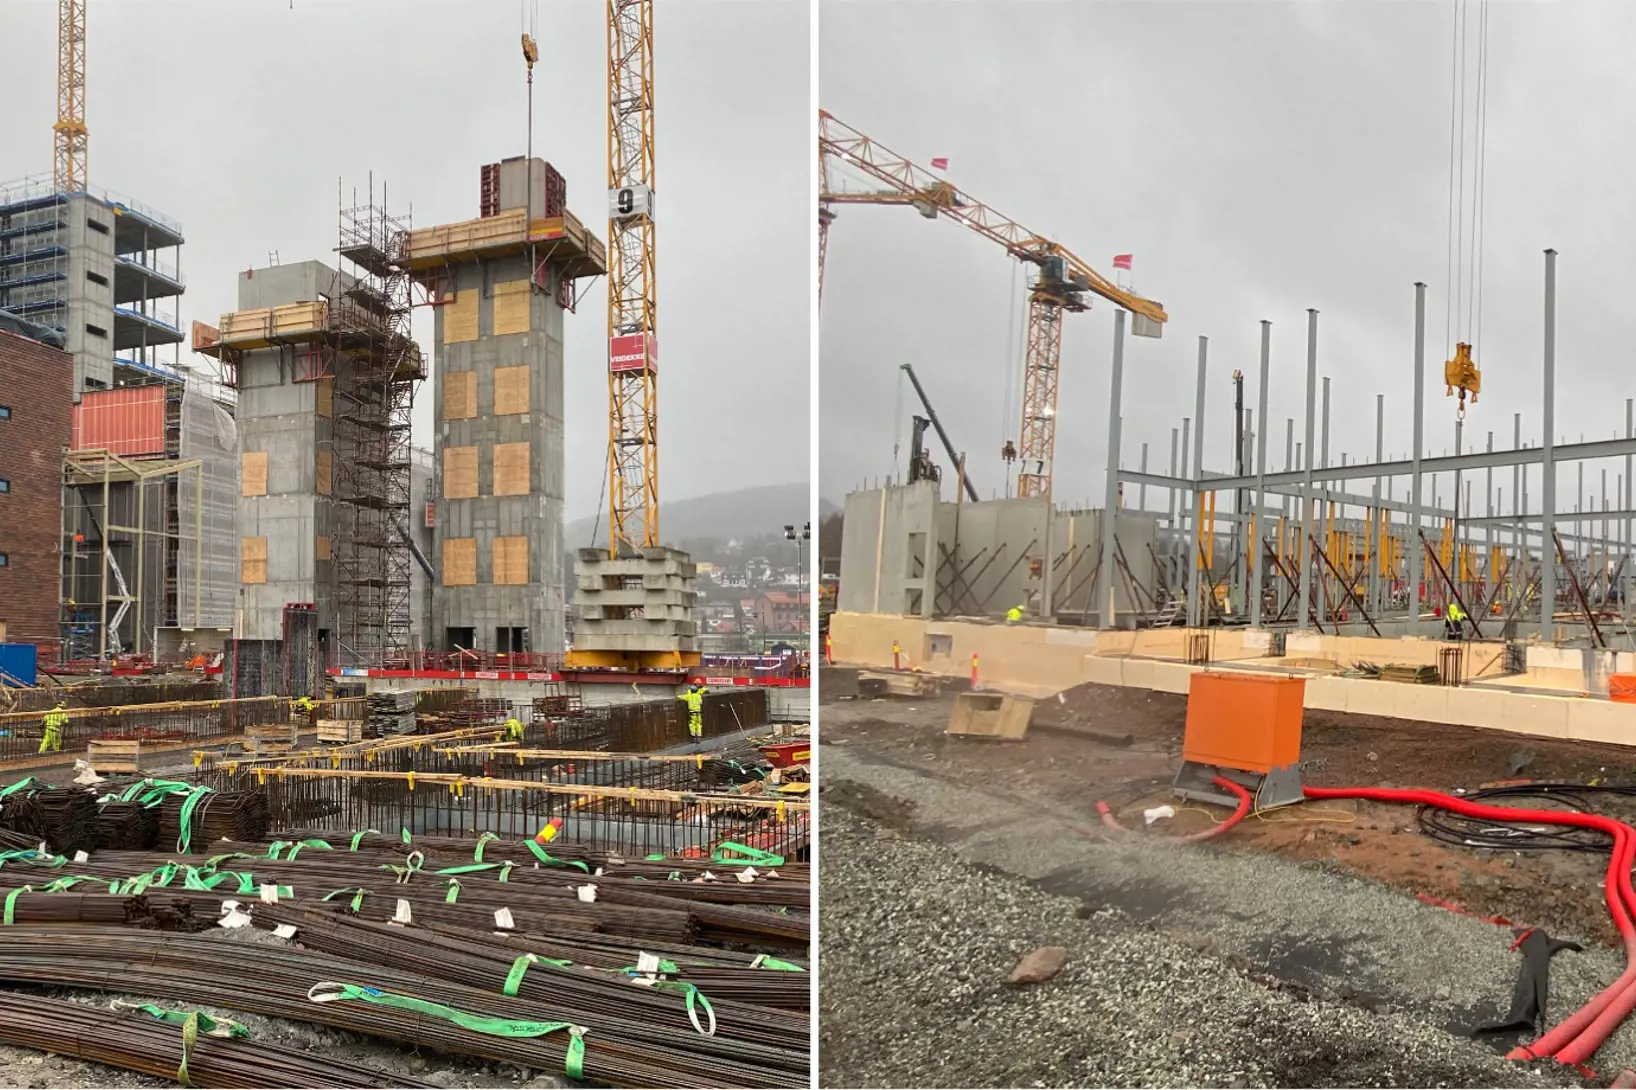 To bilder fra byggeplass viser at bygg reiser seg